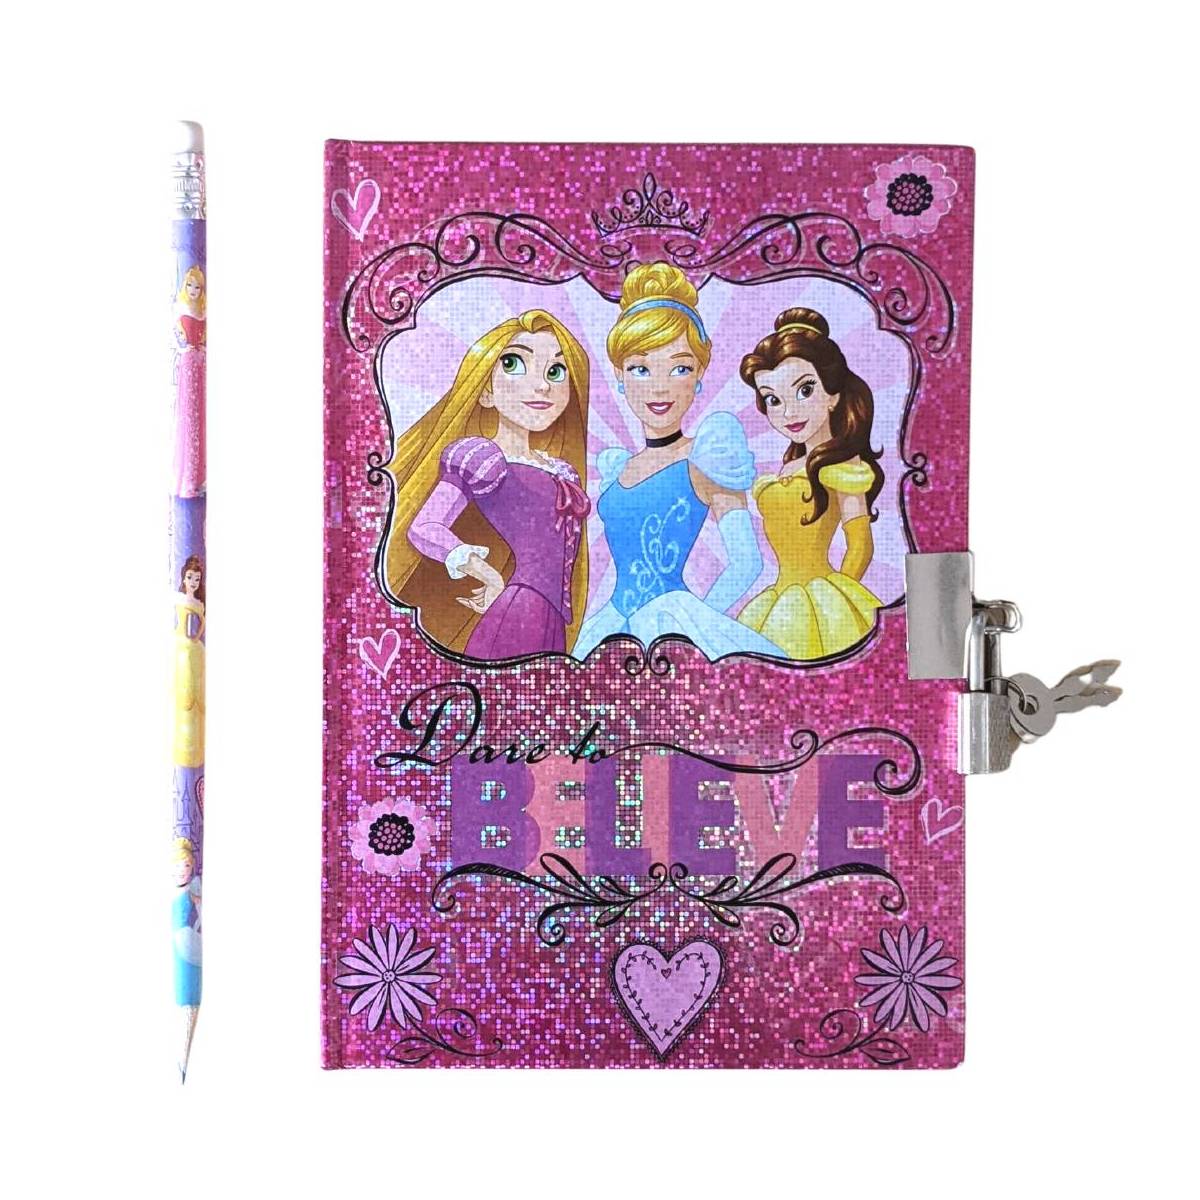 Disney Princess geheimes Notizbuch mit Bleistift